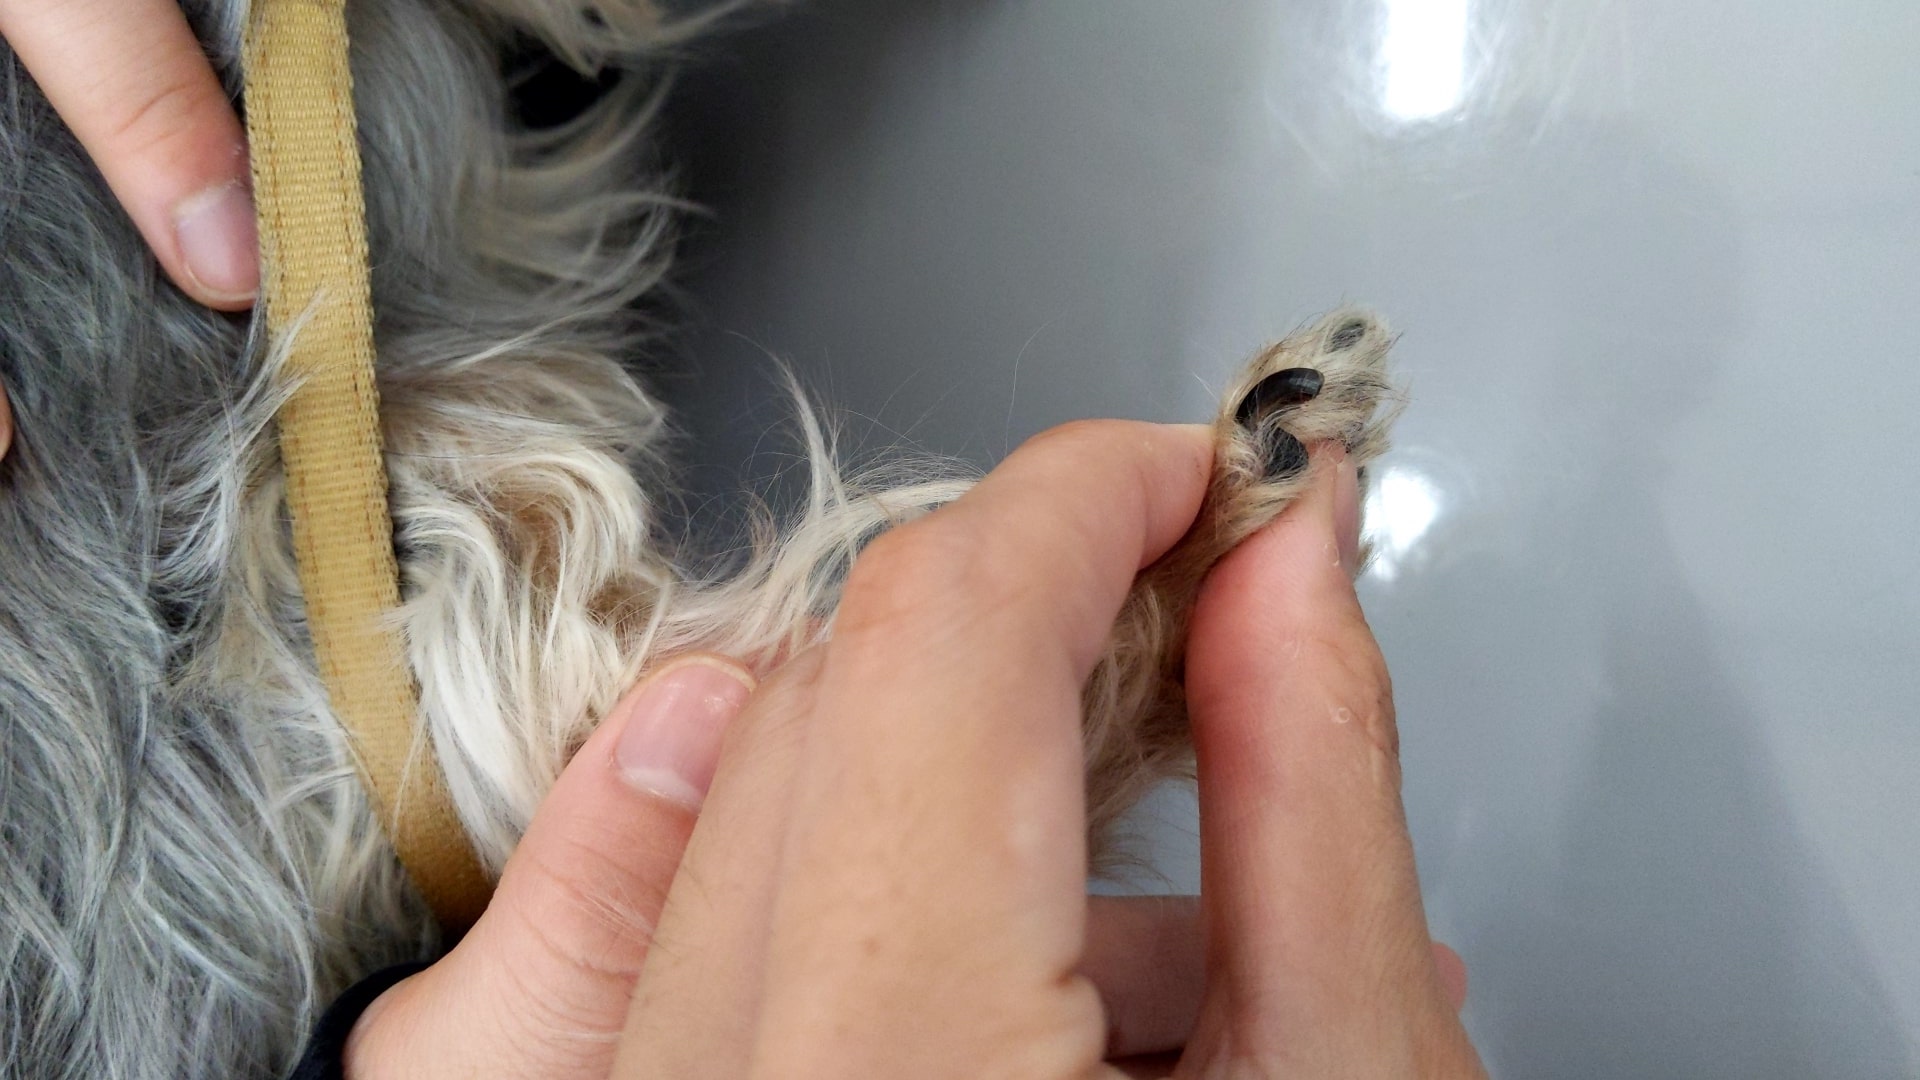 獣医師監修 犬の爪切りの方法を出血時の対応やコツも含めて解説 初心者向け たかつきユア動物病院 高槻市栄町 犬 猫専門 ワクチン 健康診断も対応